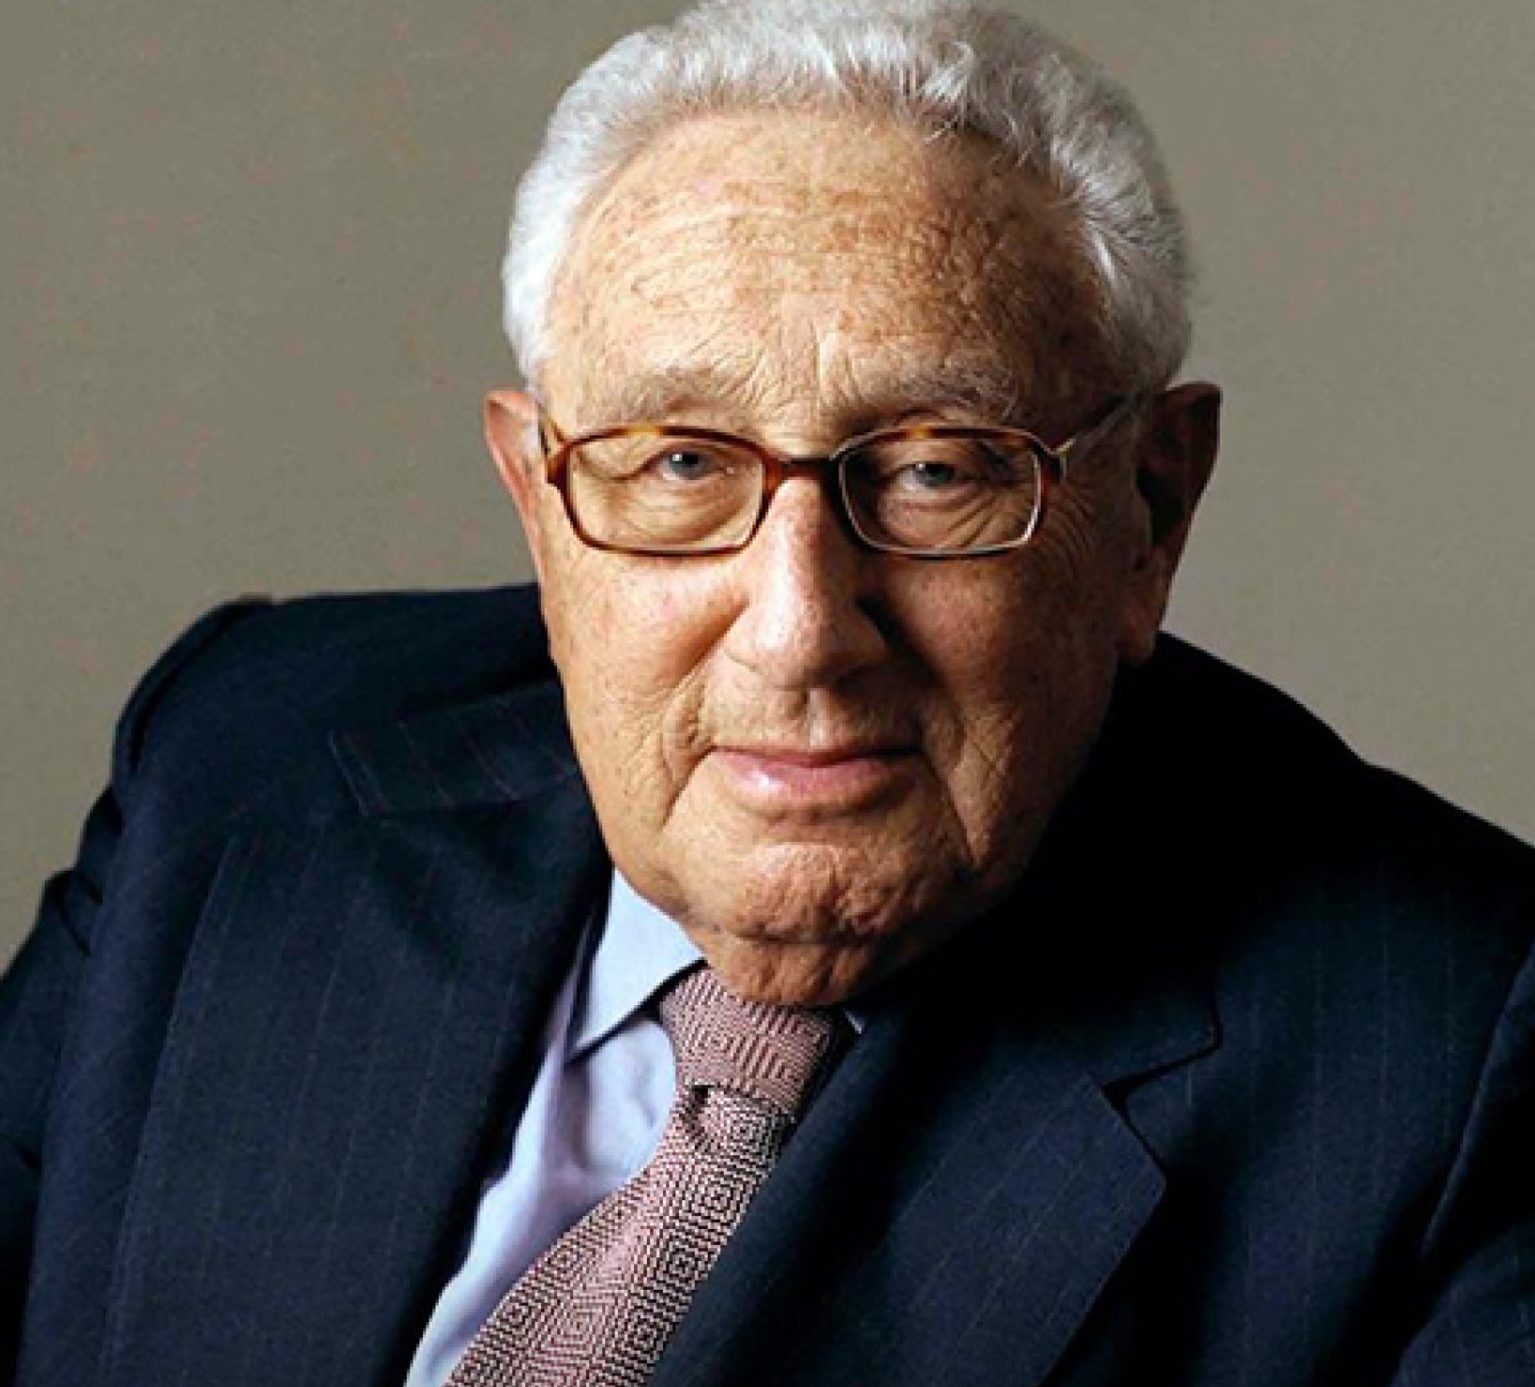 Morre aos 100 anos Henry Kissinger, ex-Secretário de Estado dos EUA